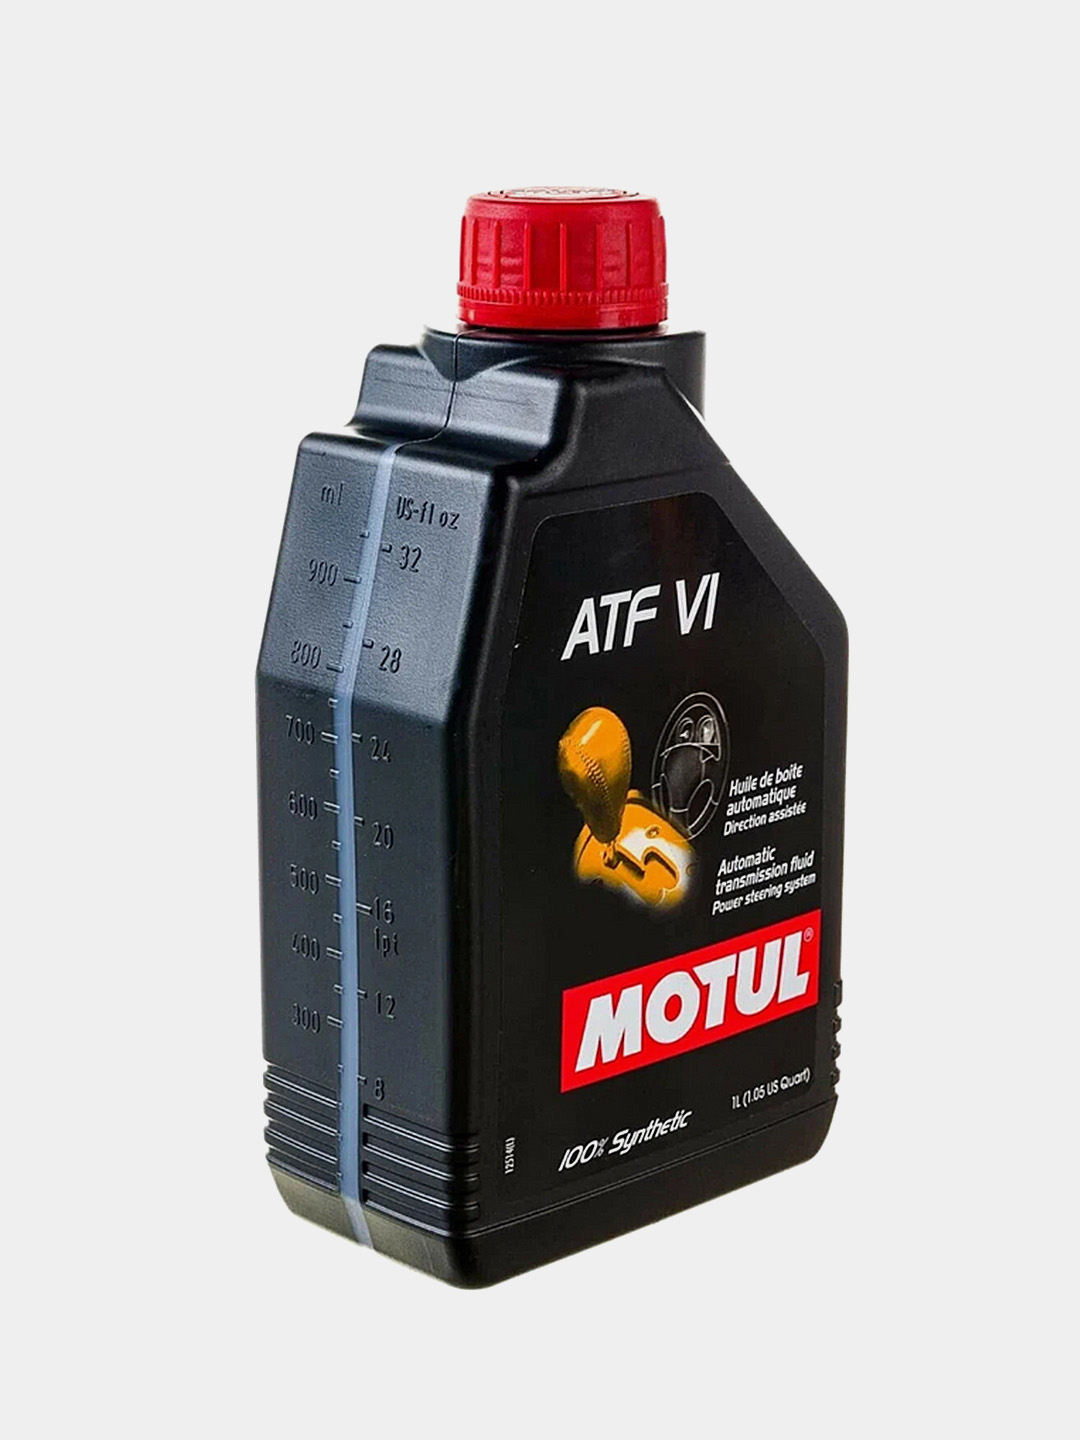 Atf 6 трансмиссионное масло. Motul ATF 6. 105774 Motul ATF vi. 112145 Motul ATF vi. Масло Motul Dexron 6.